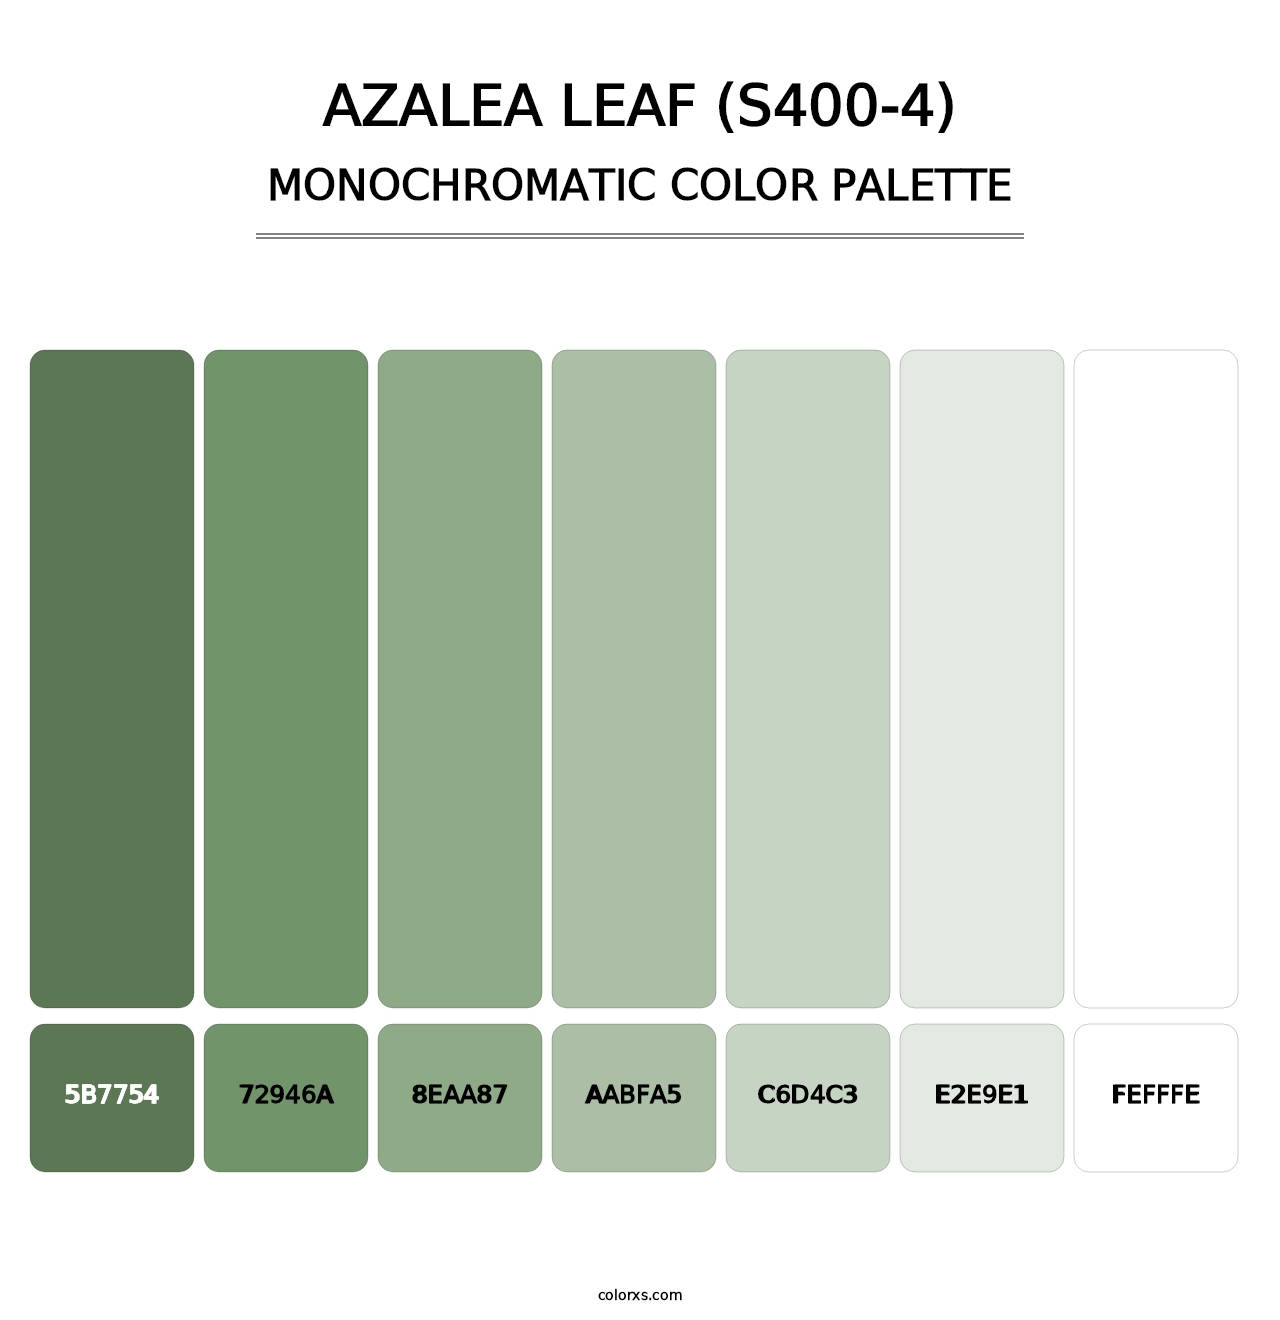 Azalea Leaf (S400-4) - Monochromatic Color Palette